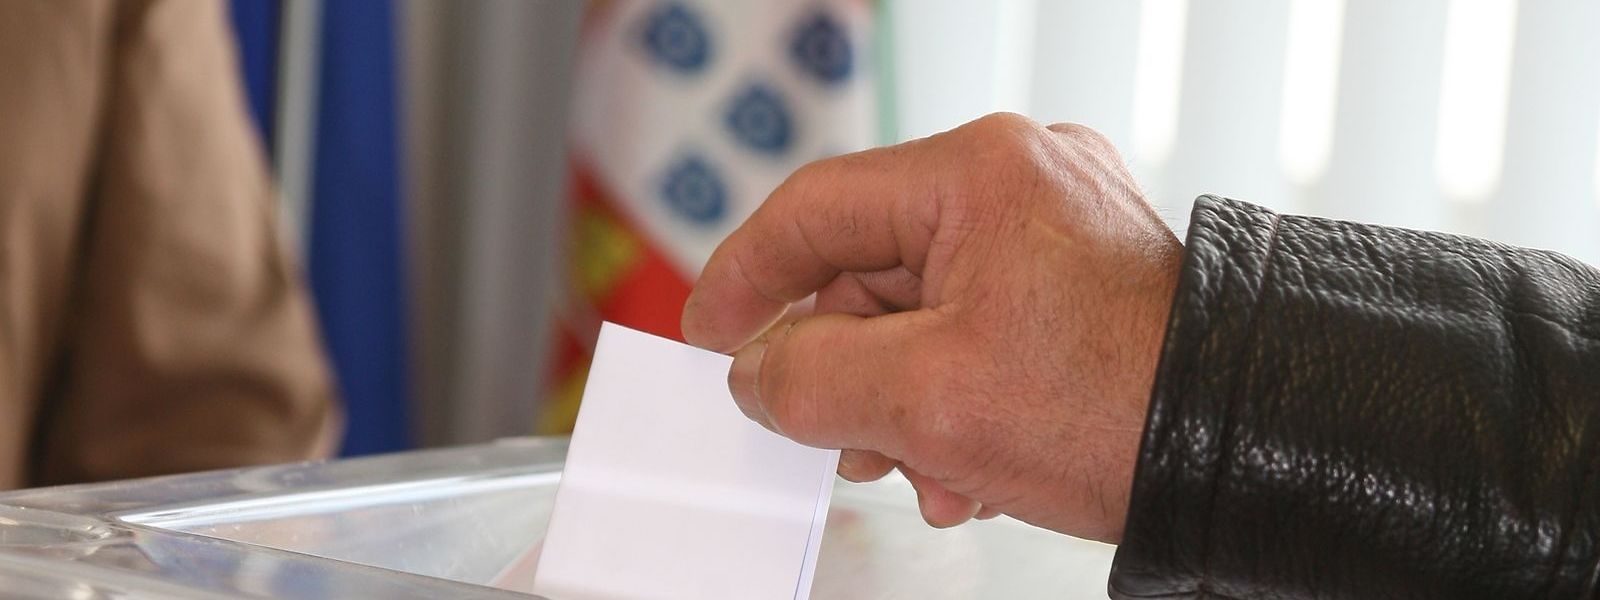 Só três portugueses optaram pelo voto presencial no consulado no Luxemburgo. A grande maioria vota por correspondência.